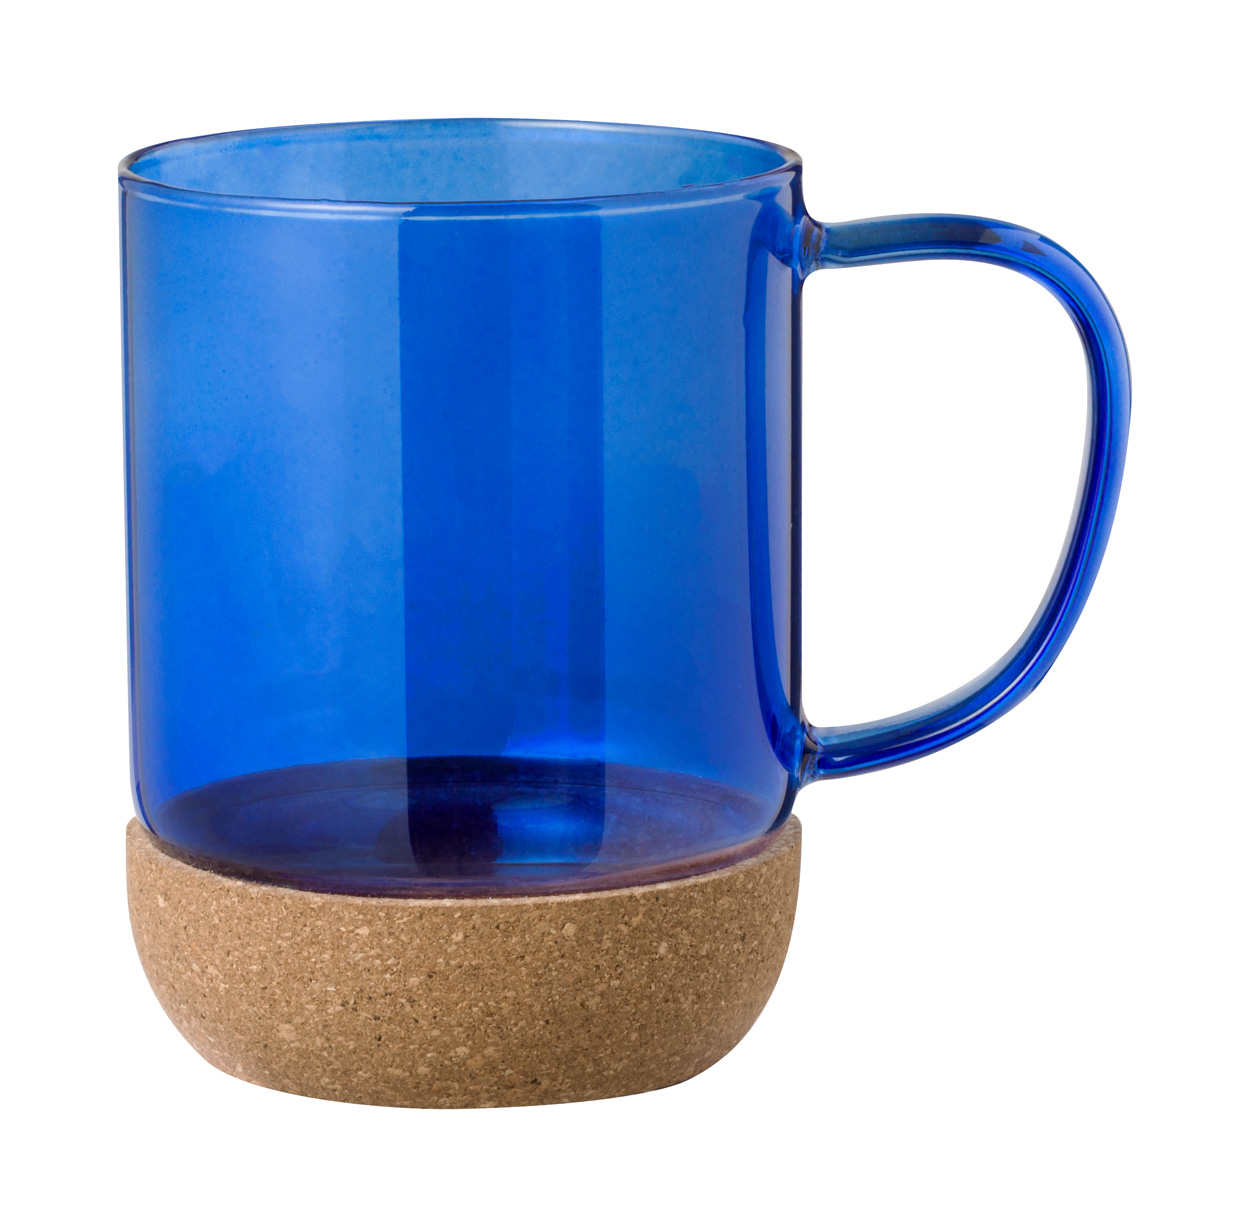 Sarah's mug - blue